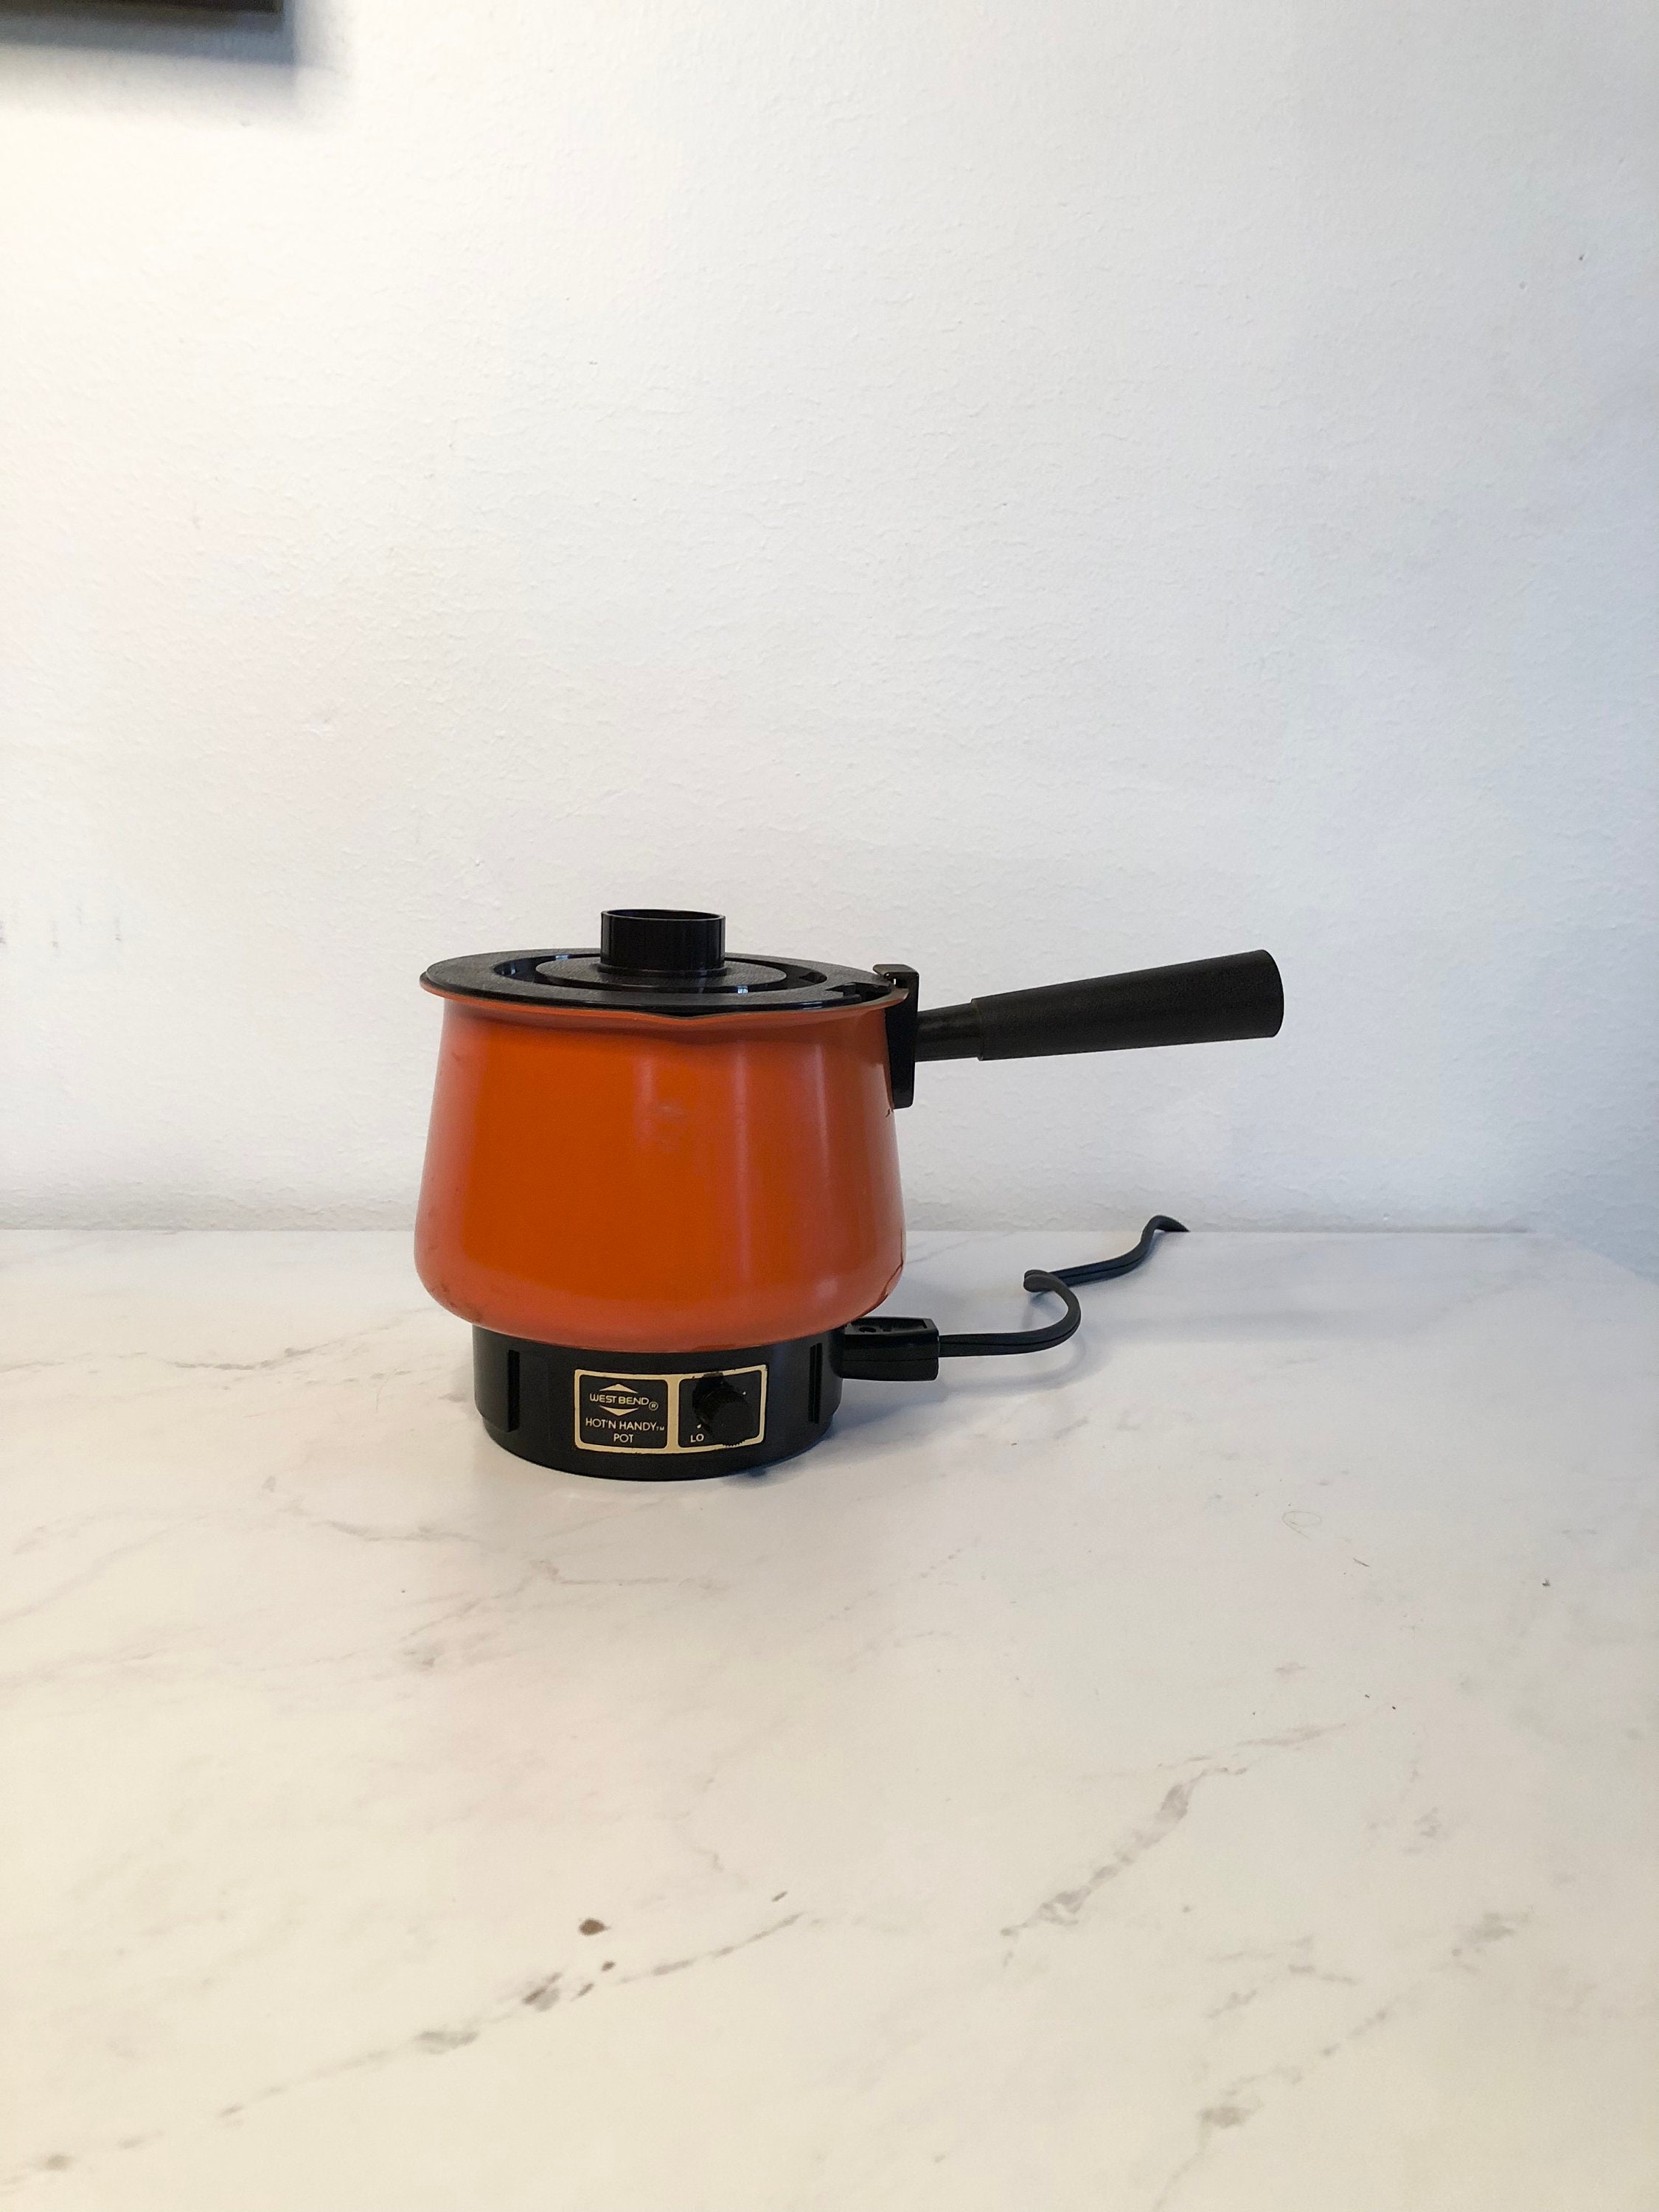 Vintage Set West Bend Slo-cooker & Bun Warmer 4 QT Slow Cooker Leaf Pattern  70s Working Crock Pot Like New With Tags Plus Hot Food Server 